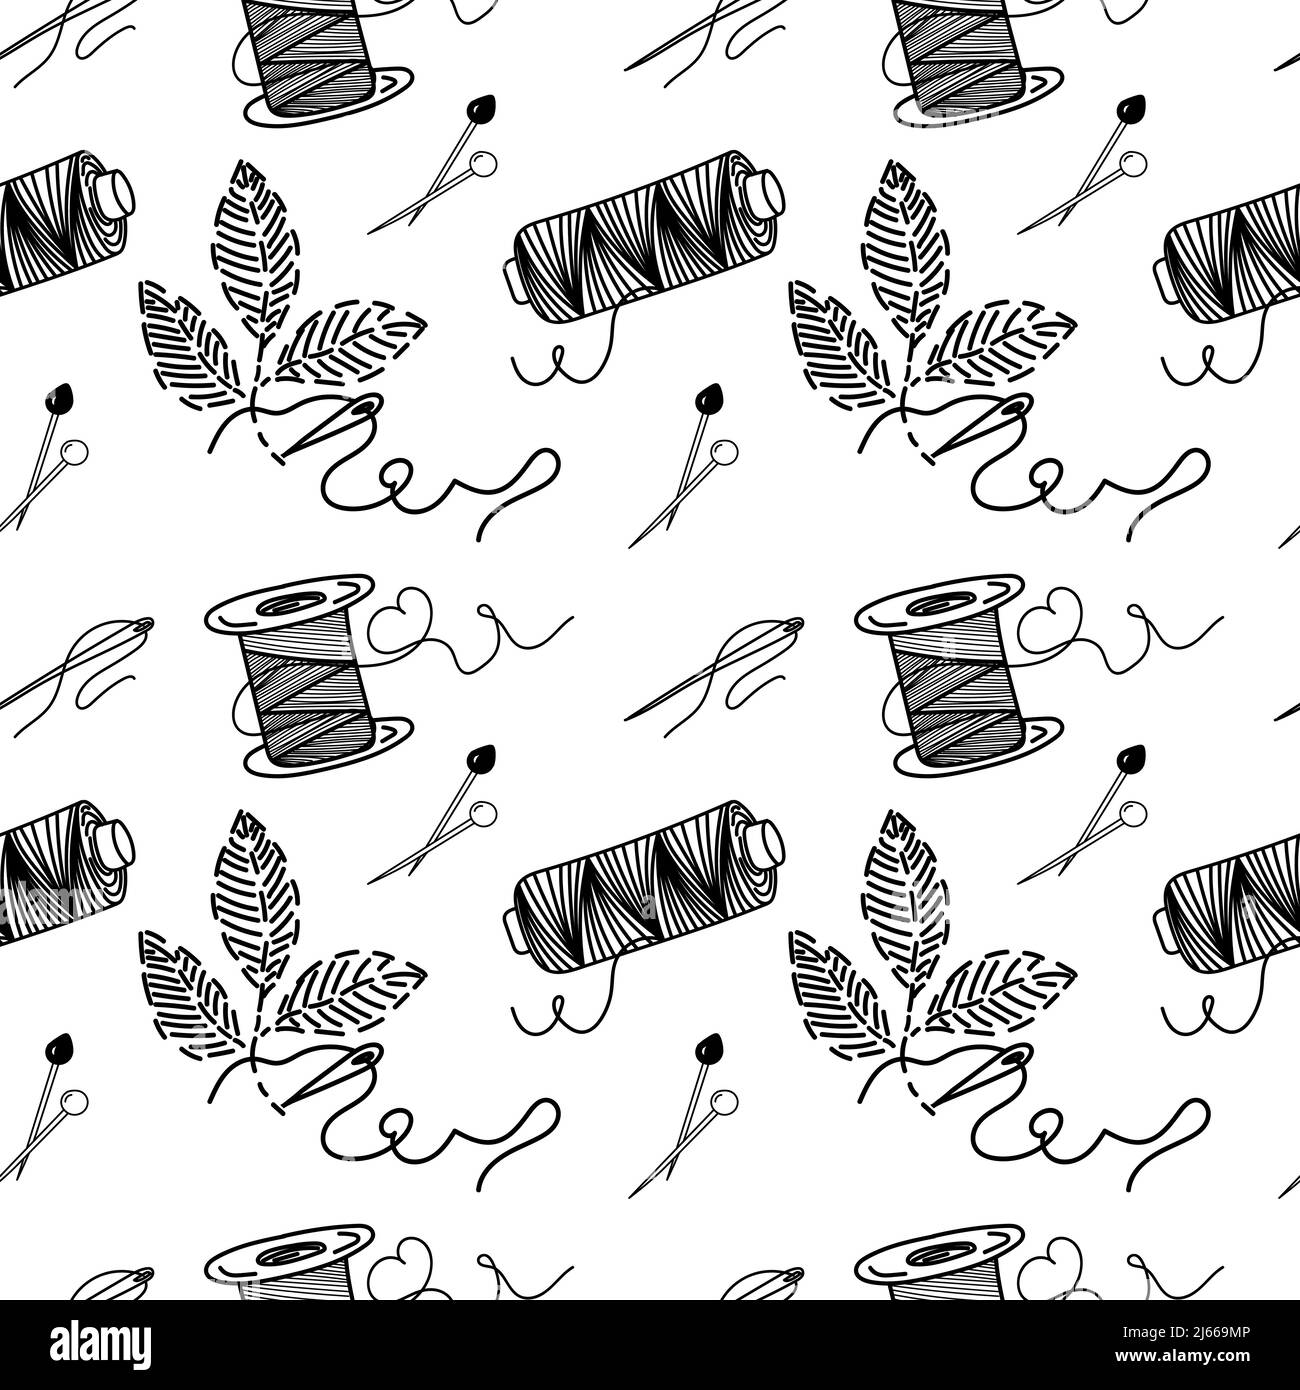 Alfileres de costura Imágenes de stock en blanco y negro - Alamy